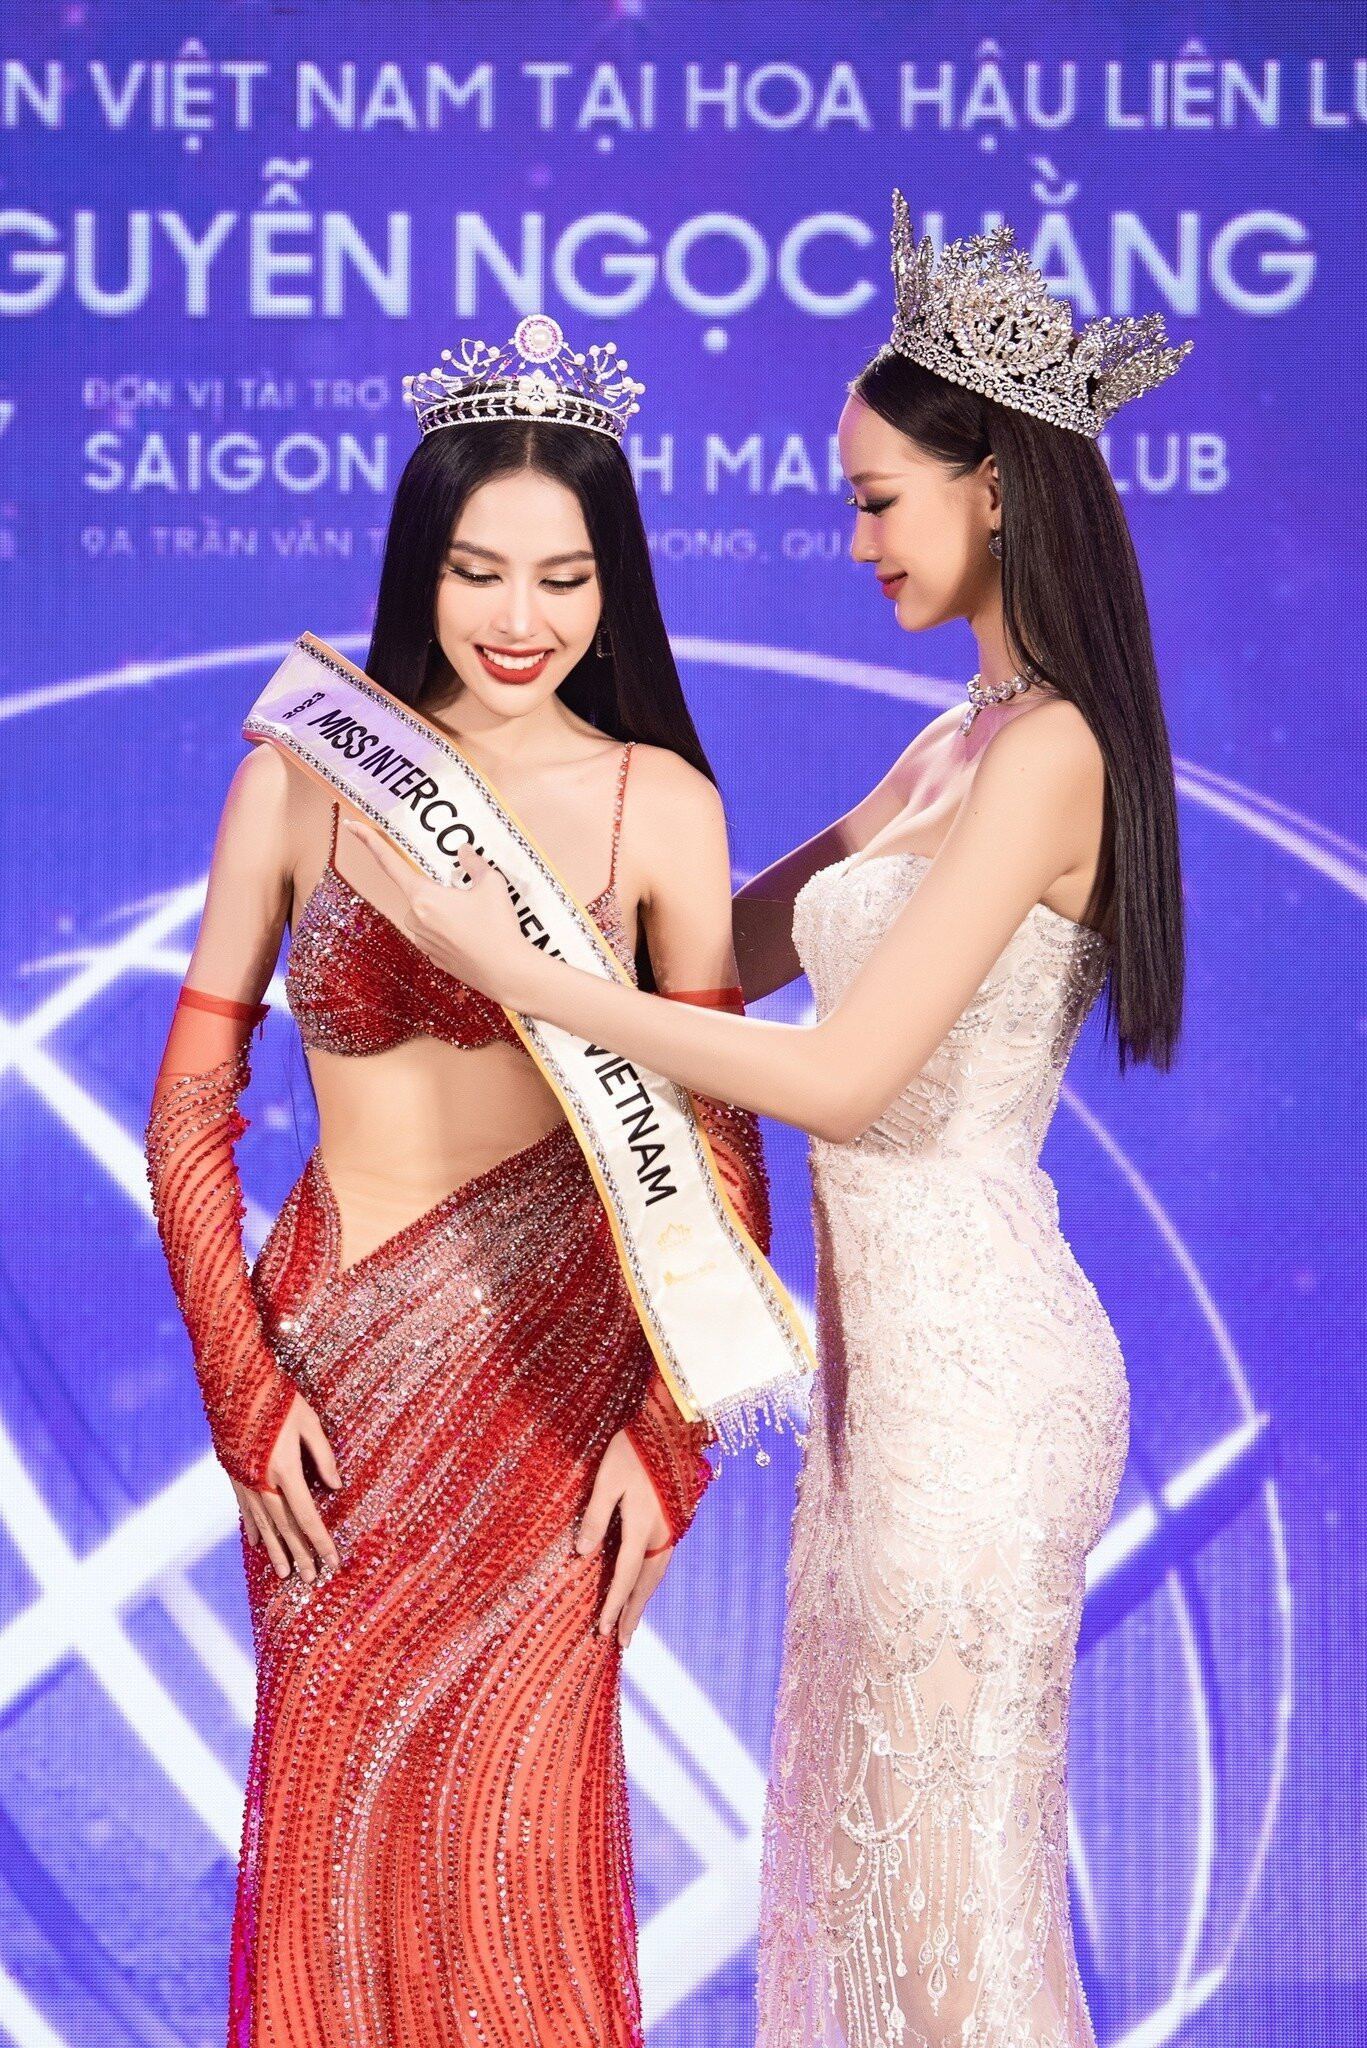 Tháng 8/2023, Á hậu Lê Nguyên Ngọc Hằng được công bố sẽ là đại diện của Việt Nam tham gia cuộc thi Miss Intercontinental - Hoa hậu Liên lục địa 2023.